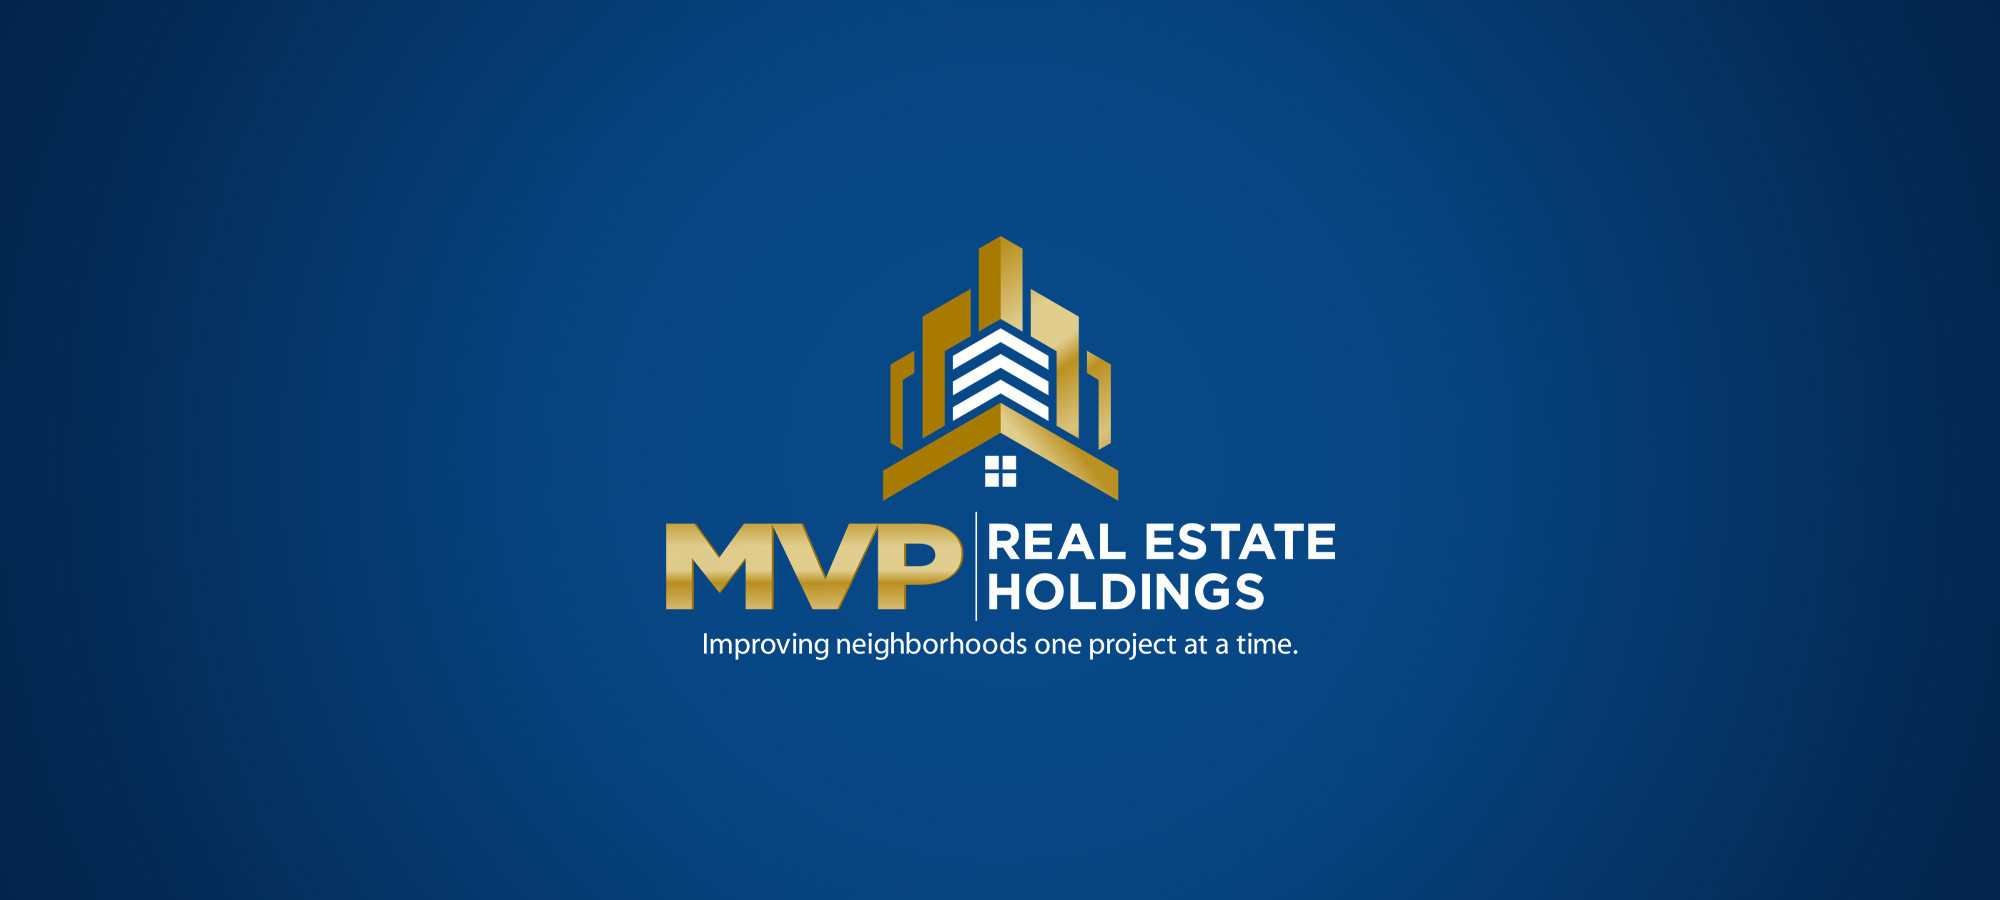 MVP Real Estate Holdings